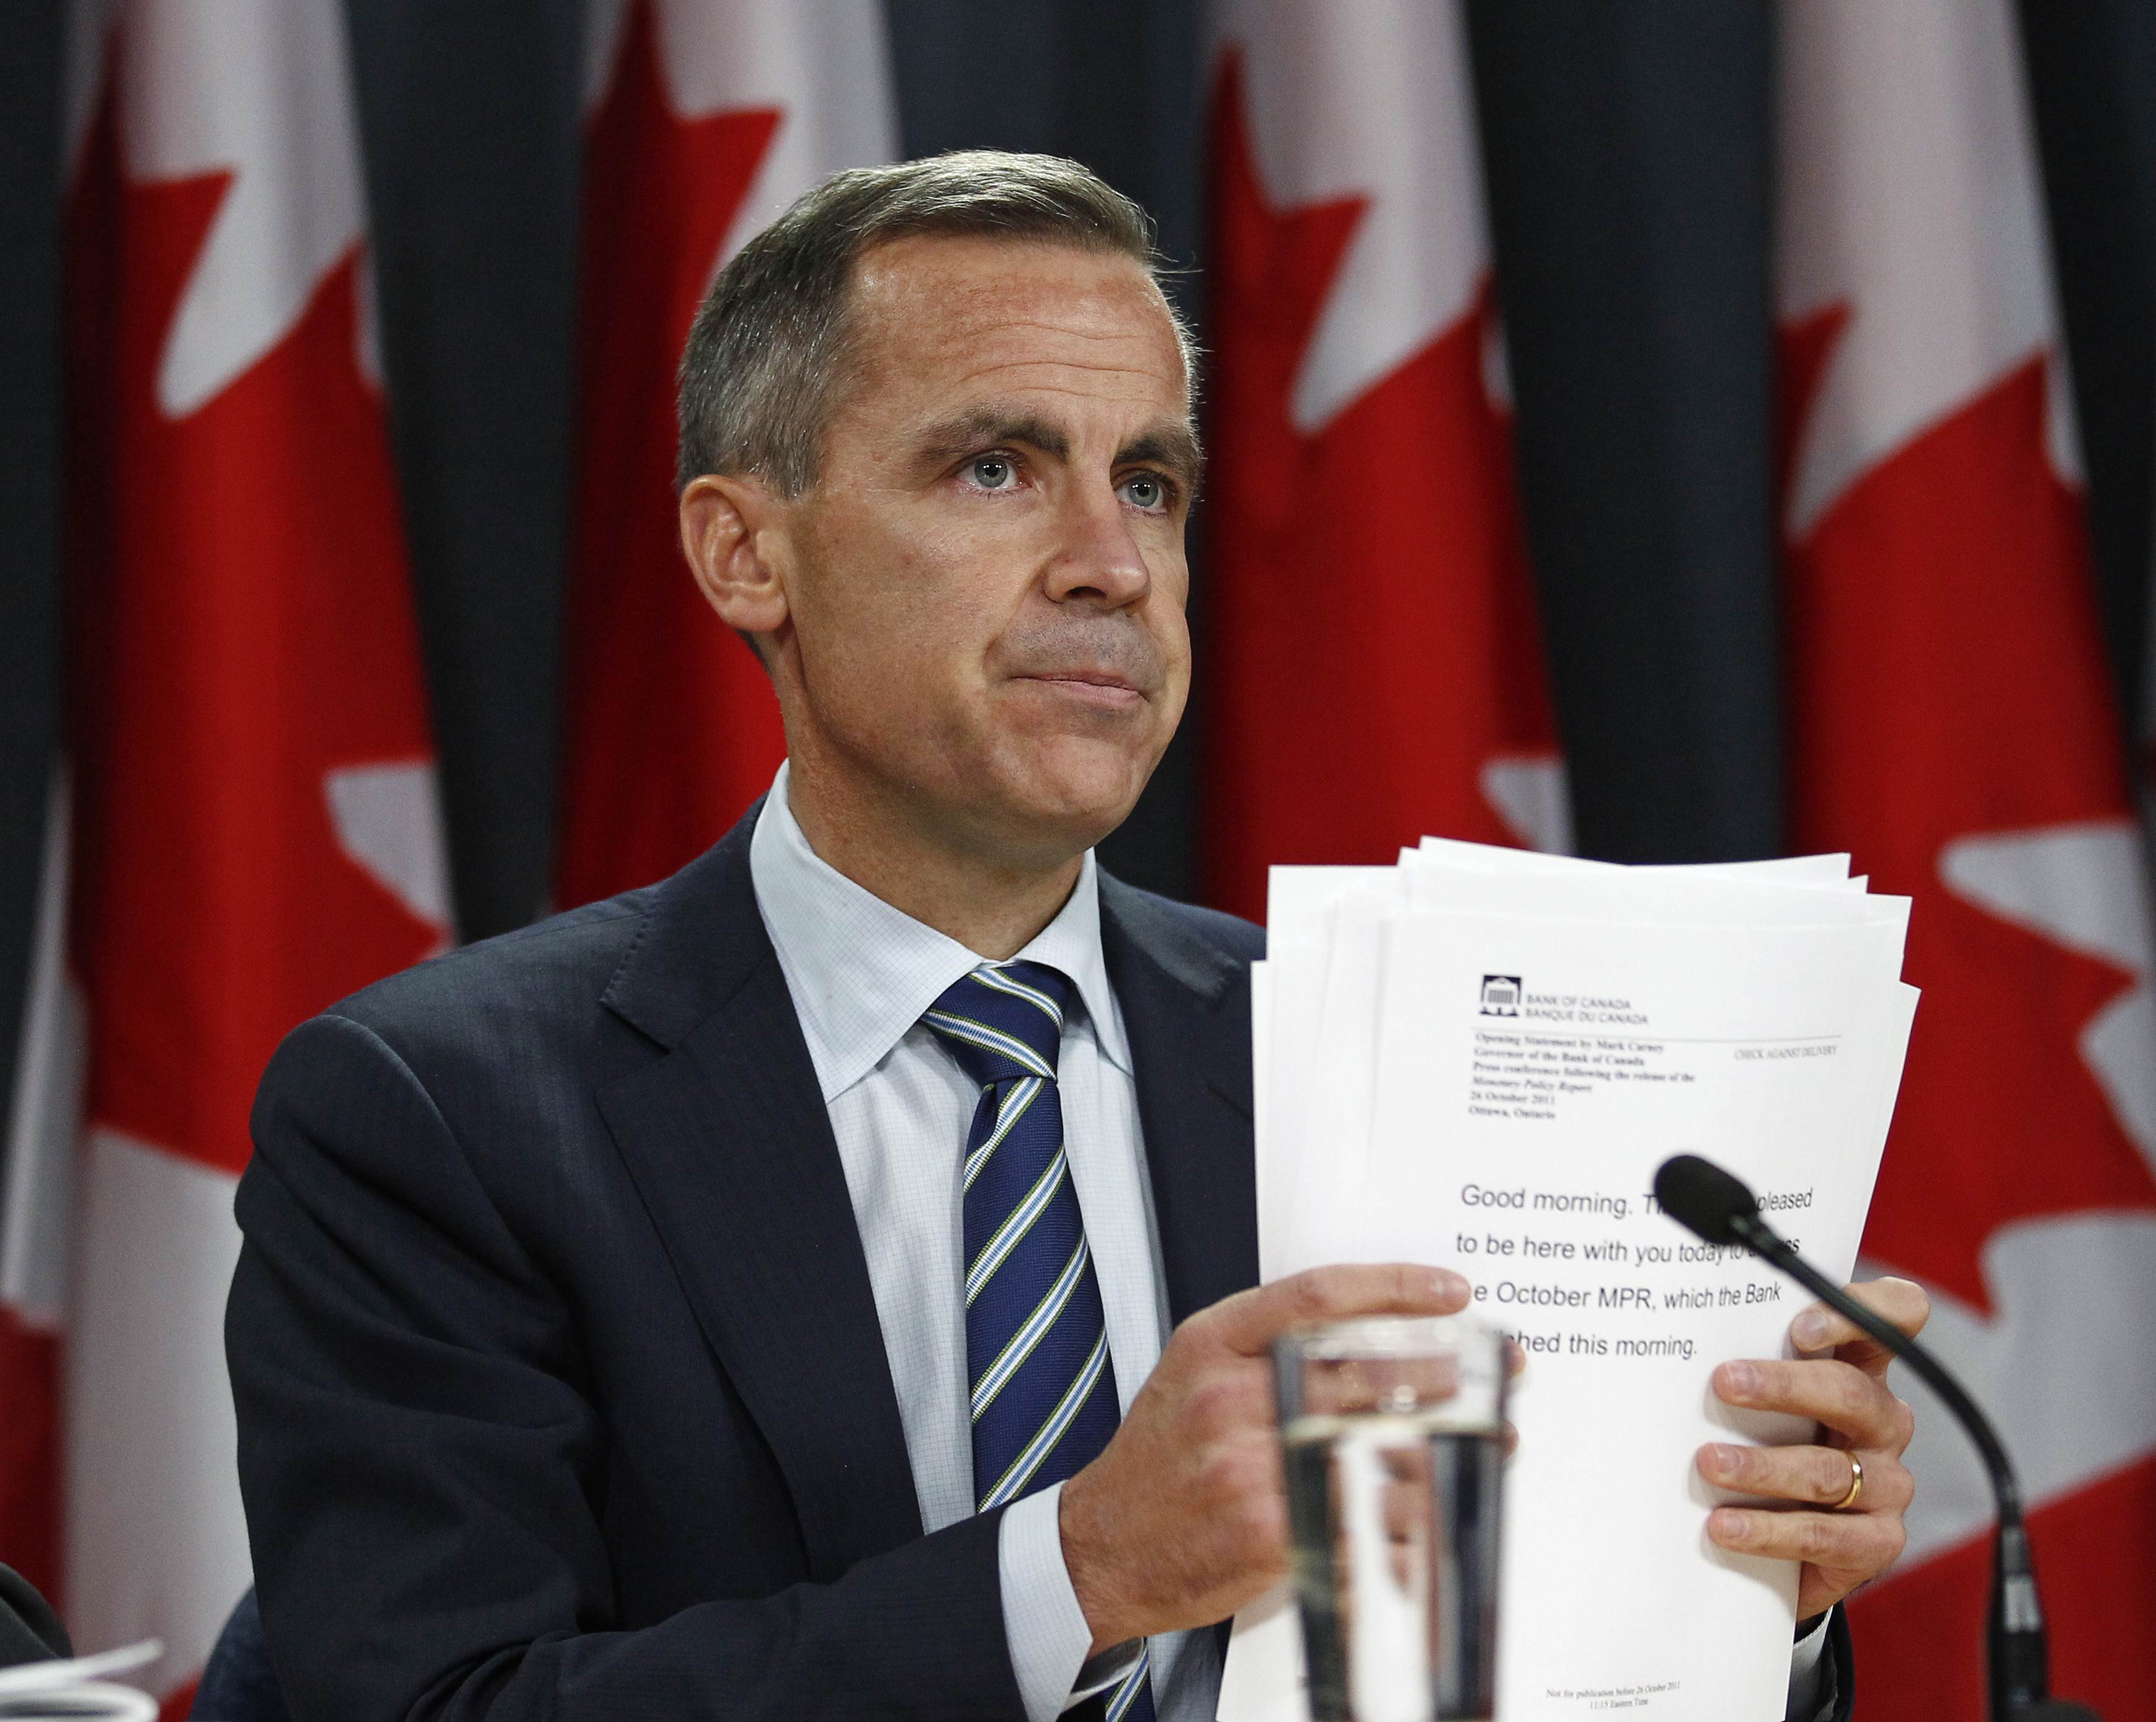 Χρήσιμο το δημοψήφισμα, λέει η Κεντρική Τράπεζα του Καναδά